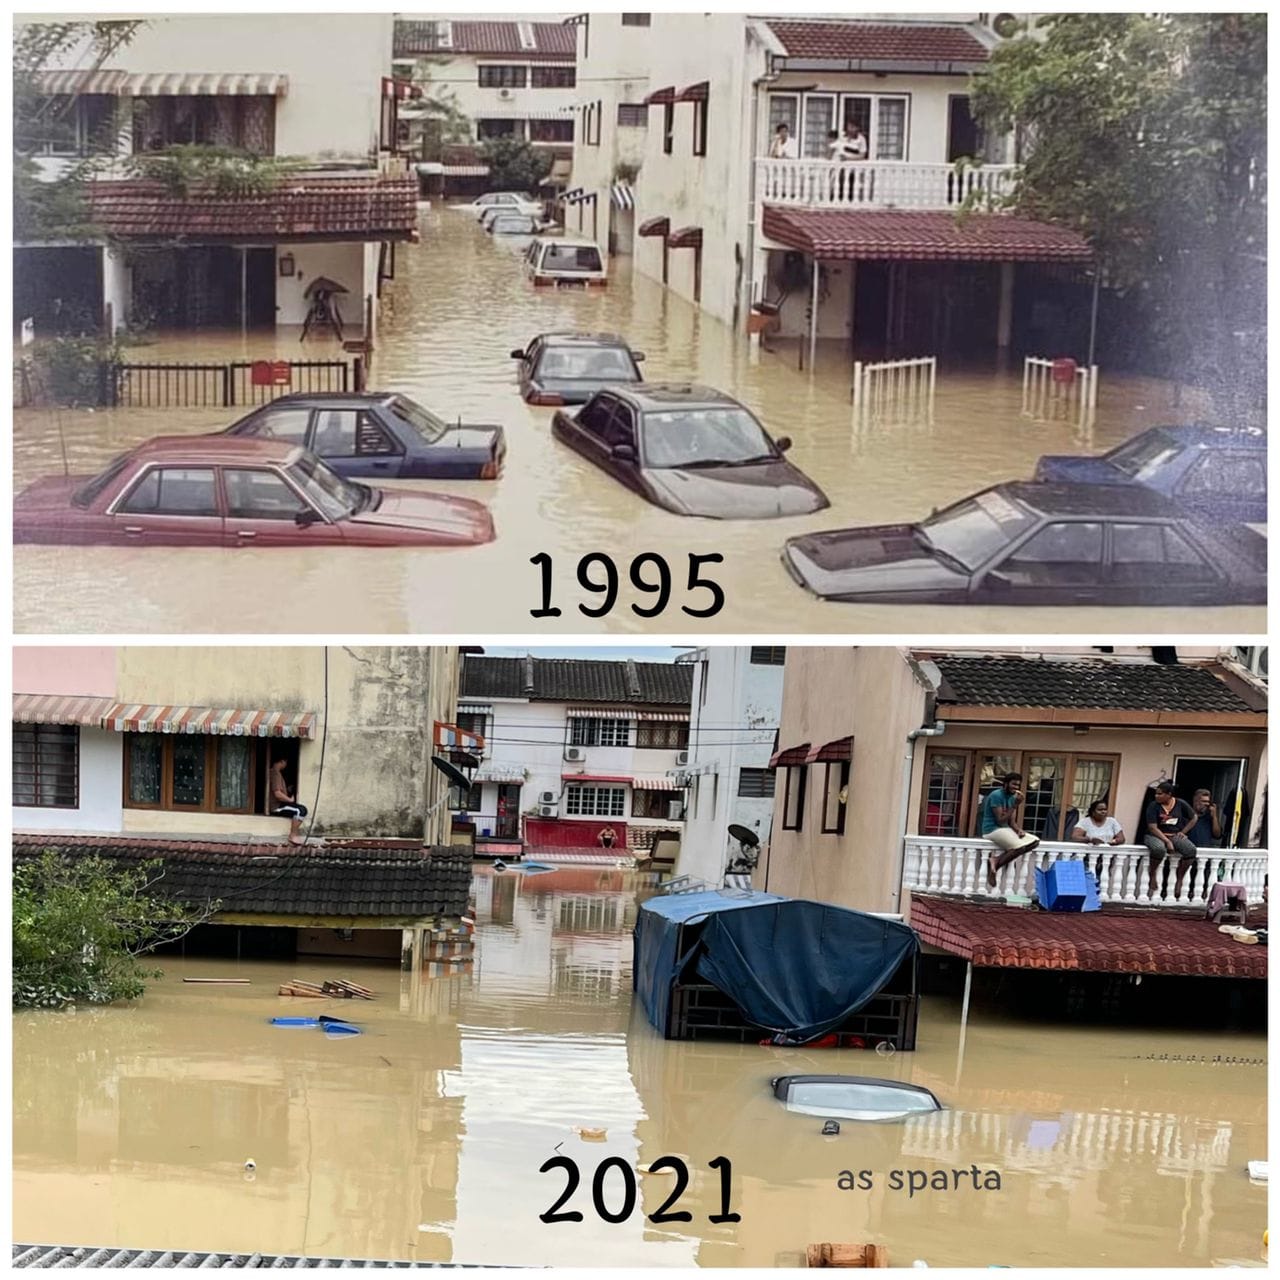 Flash floods comparison photo